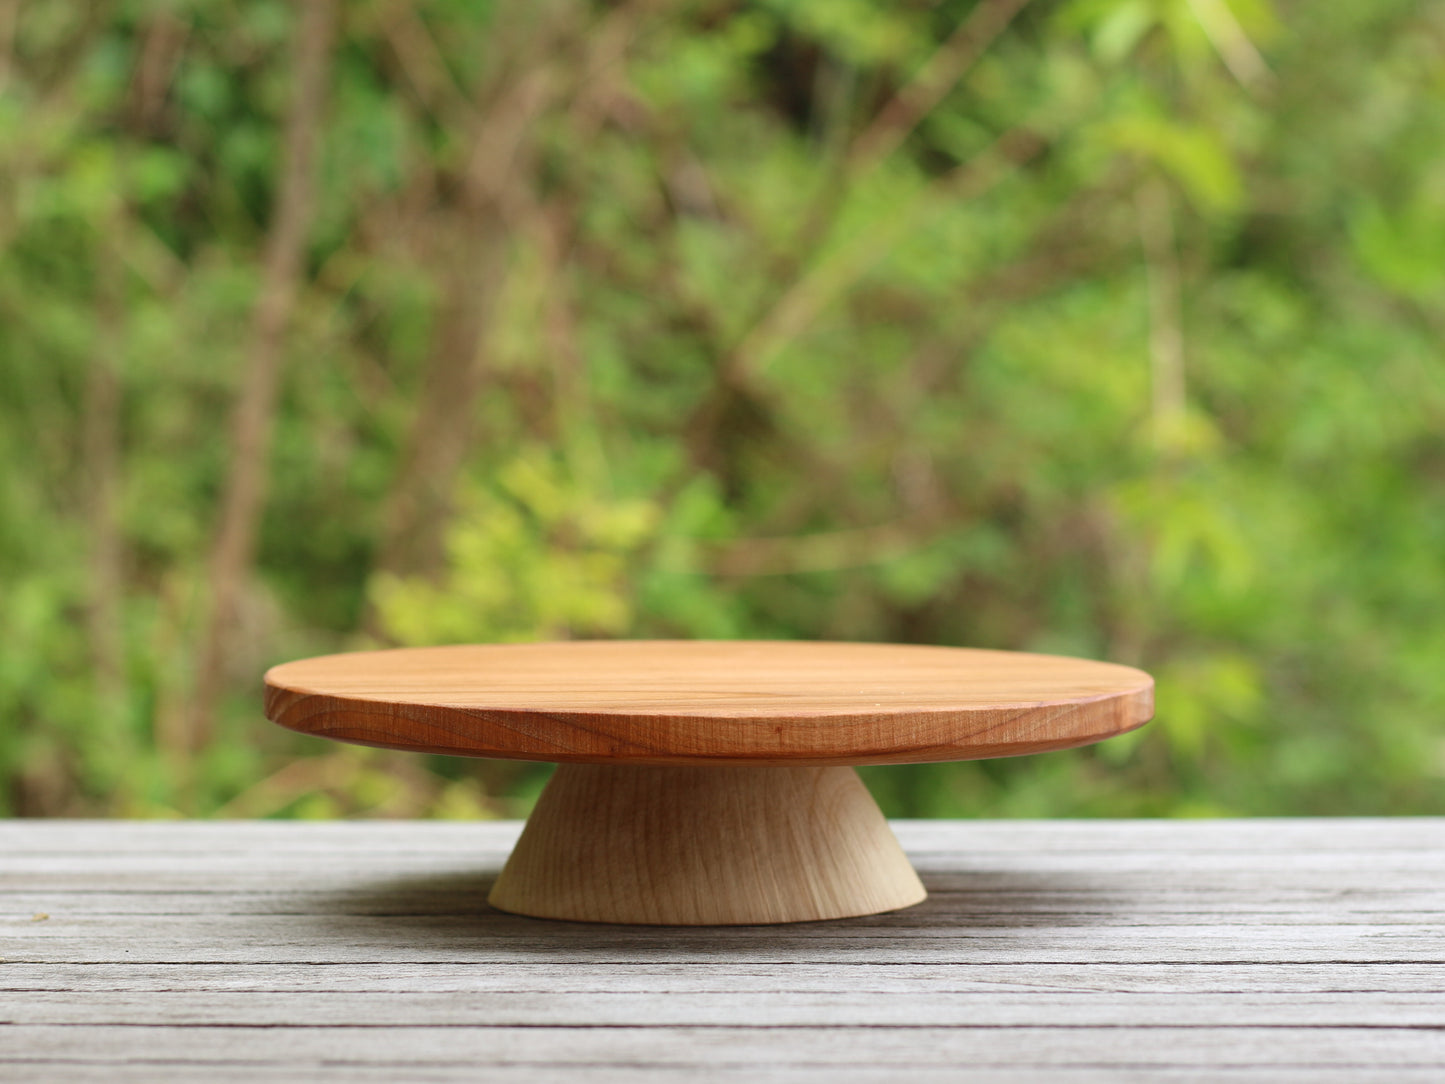 alzata per torte in legno di ciliegio ed acero, wooden cakestand, fatto a mano, handmade by Giovelab